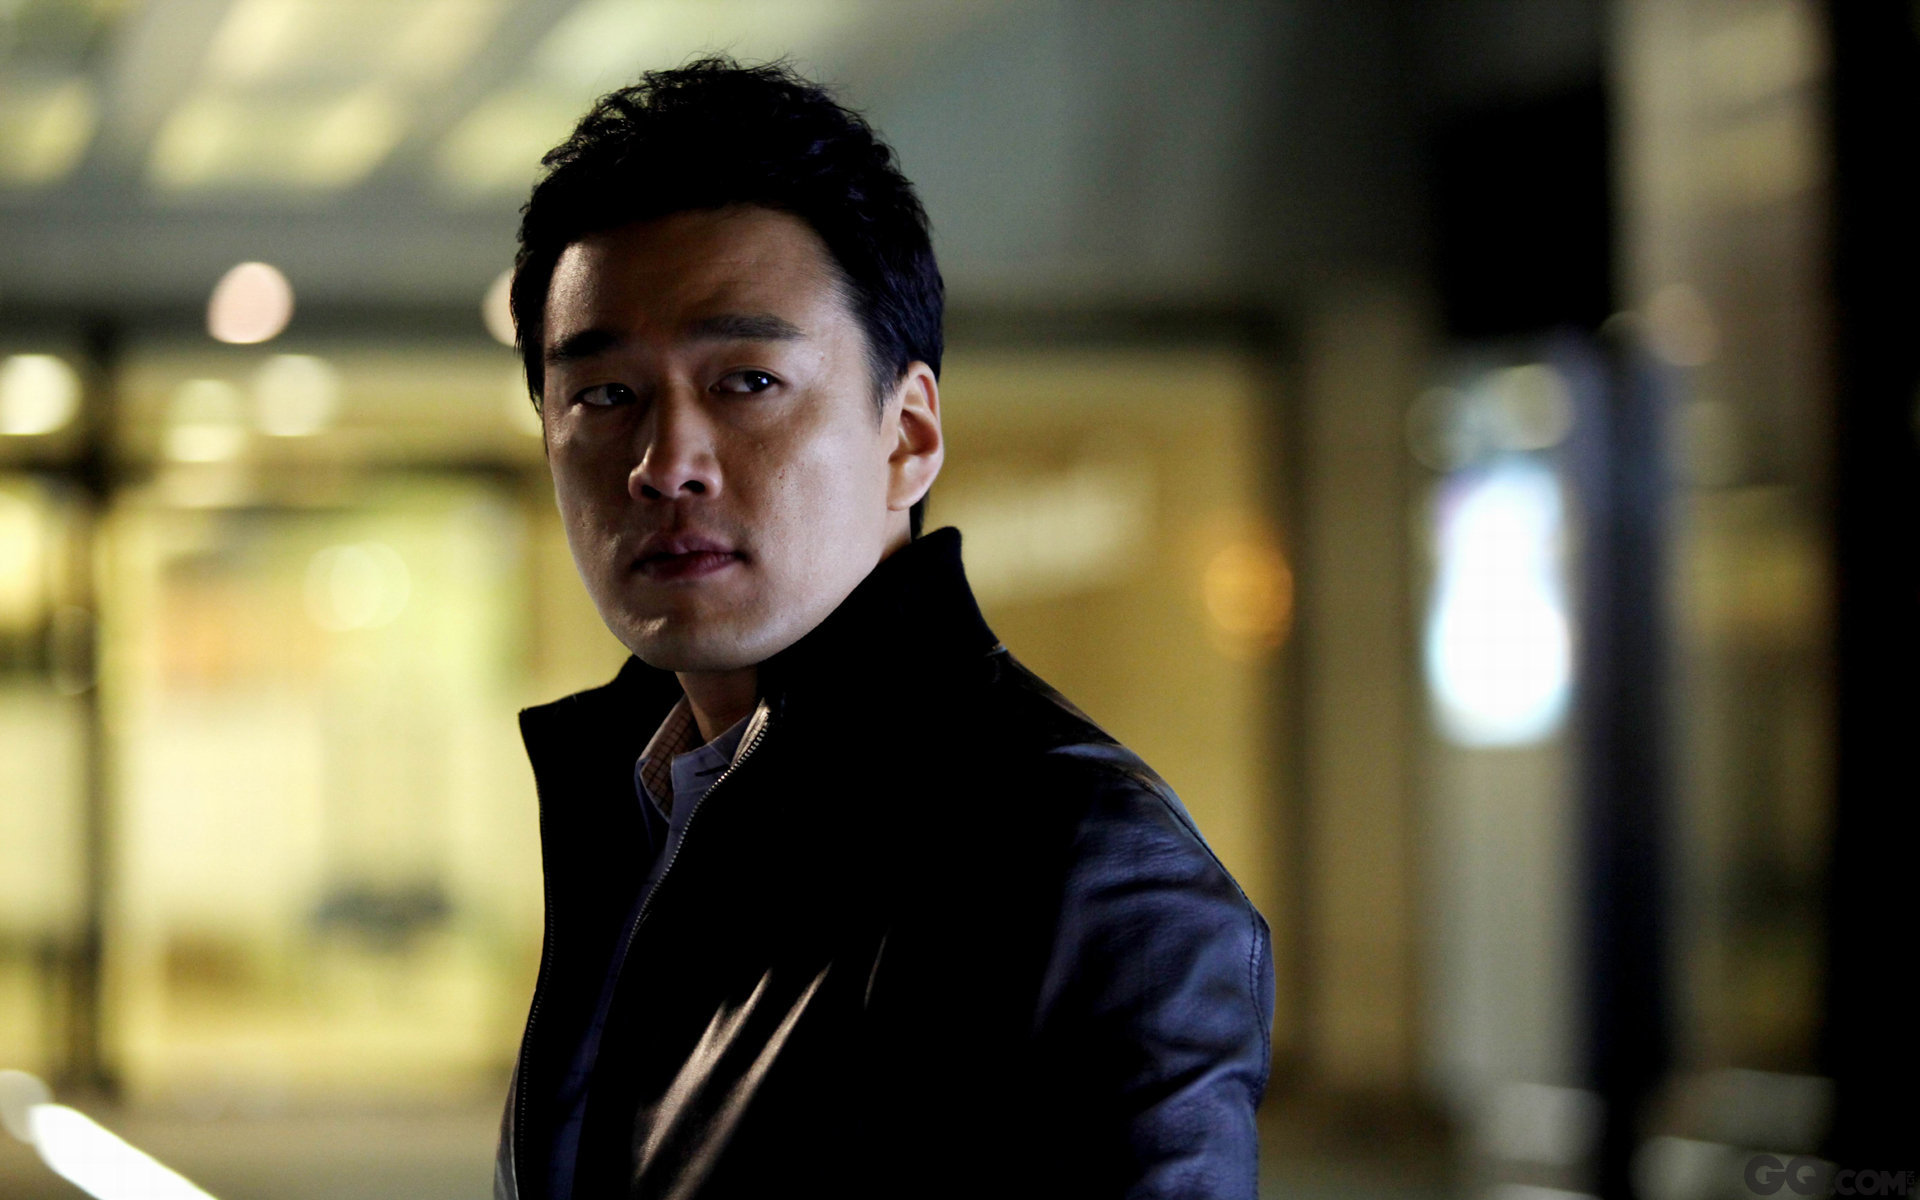 2011年开始到内地发展，王耀庆第一次出演内地电影《失恋33天》，在该片中饰演凤凰男魏依然一角，凭借此片提名第31届大众电影百花奖“最佳男配角”。